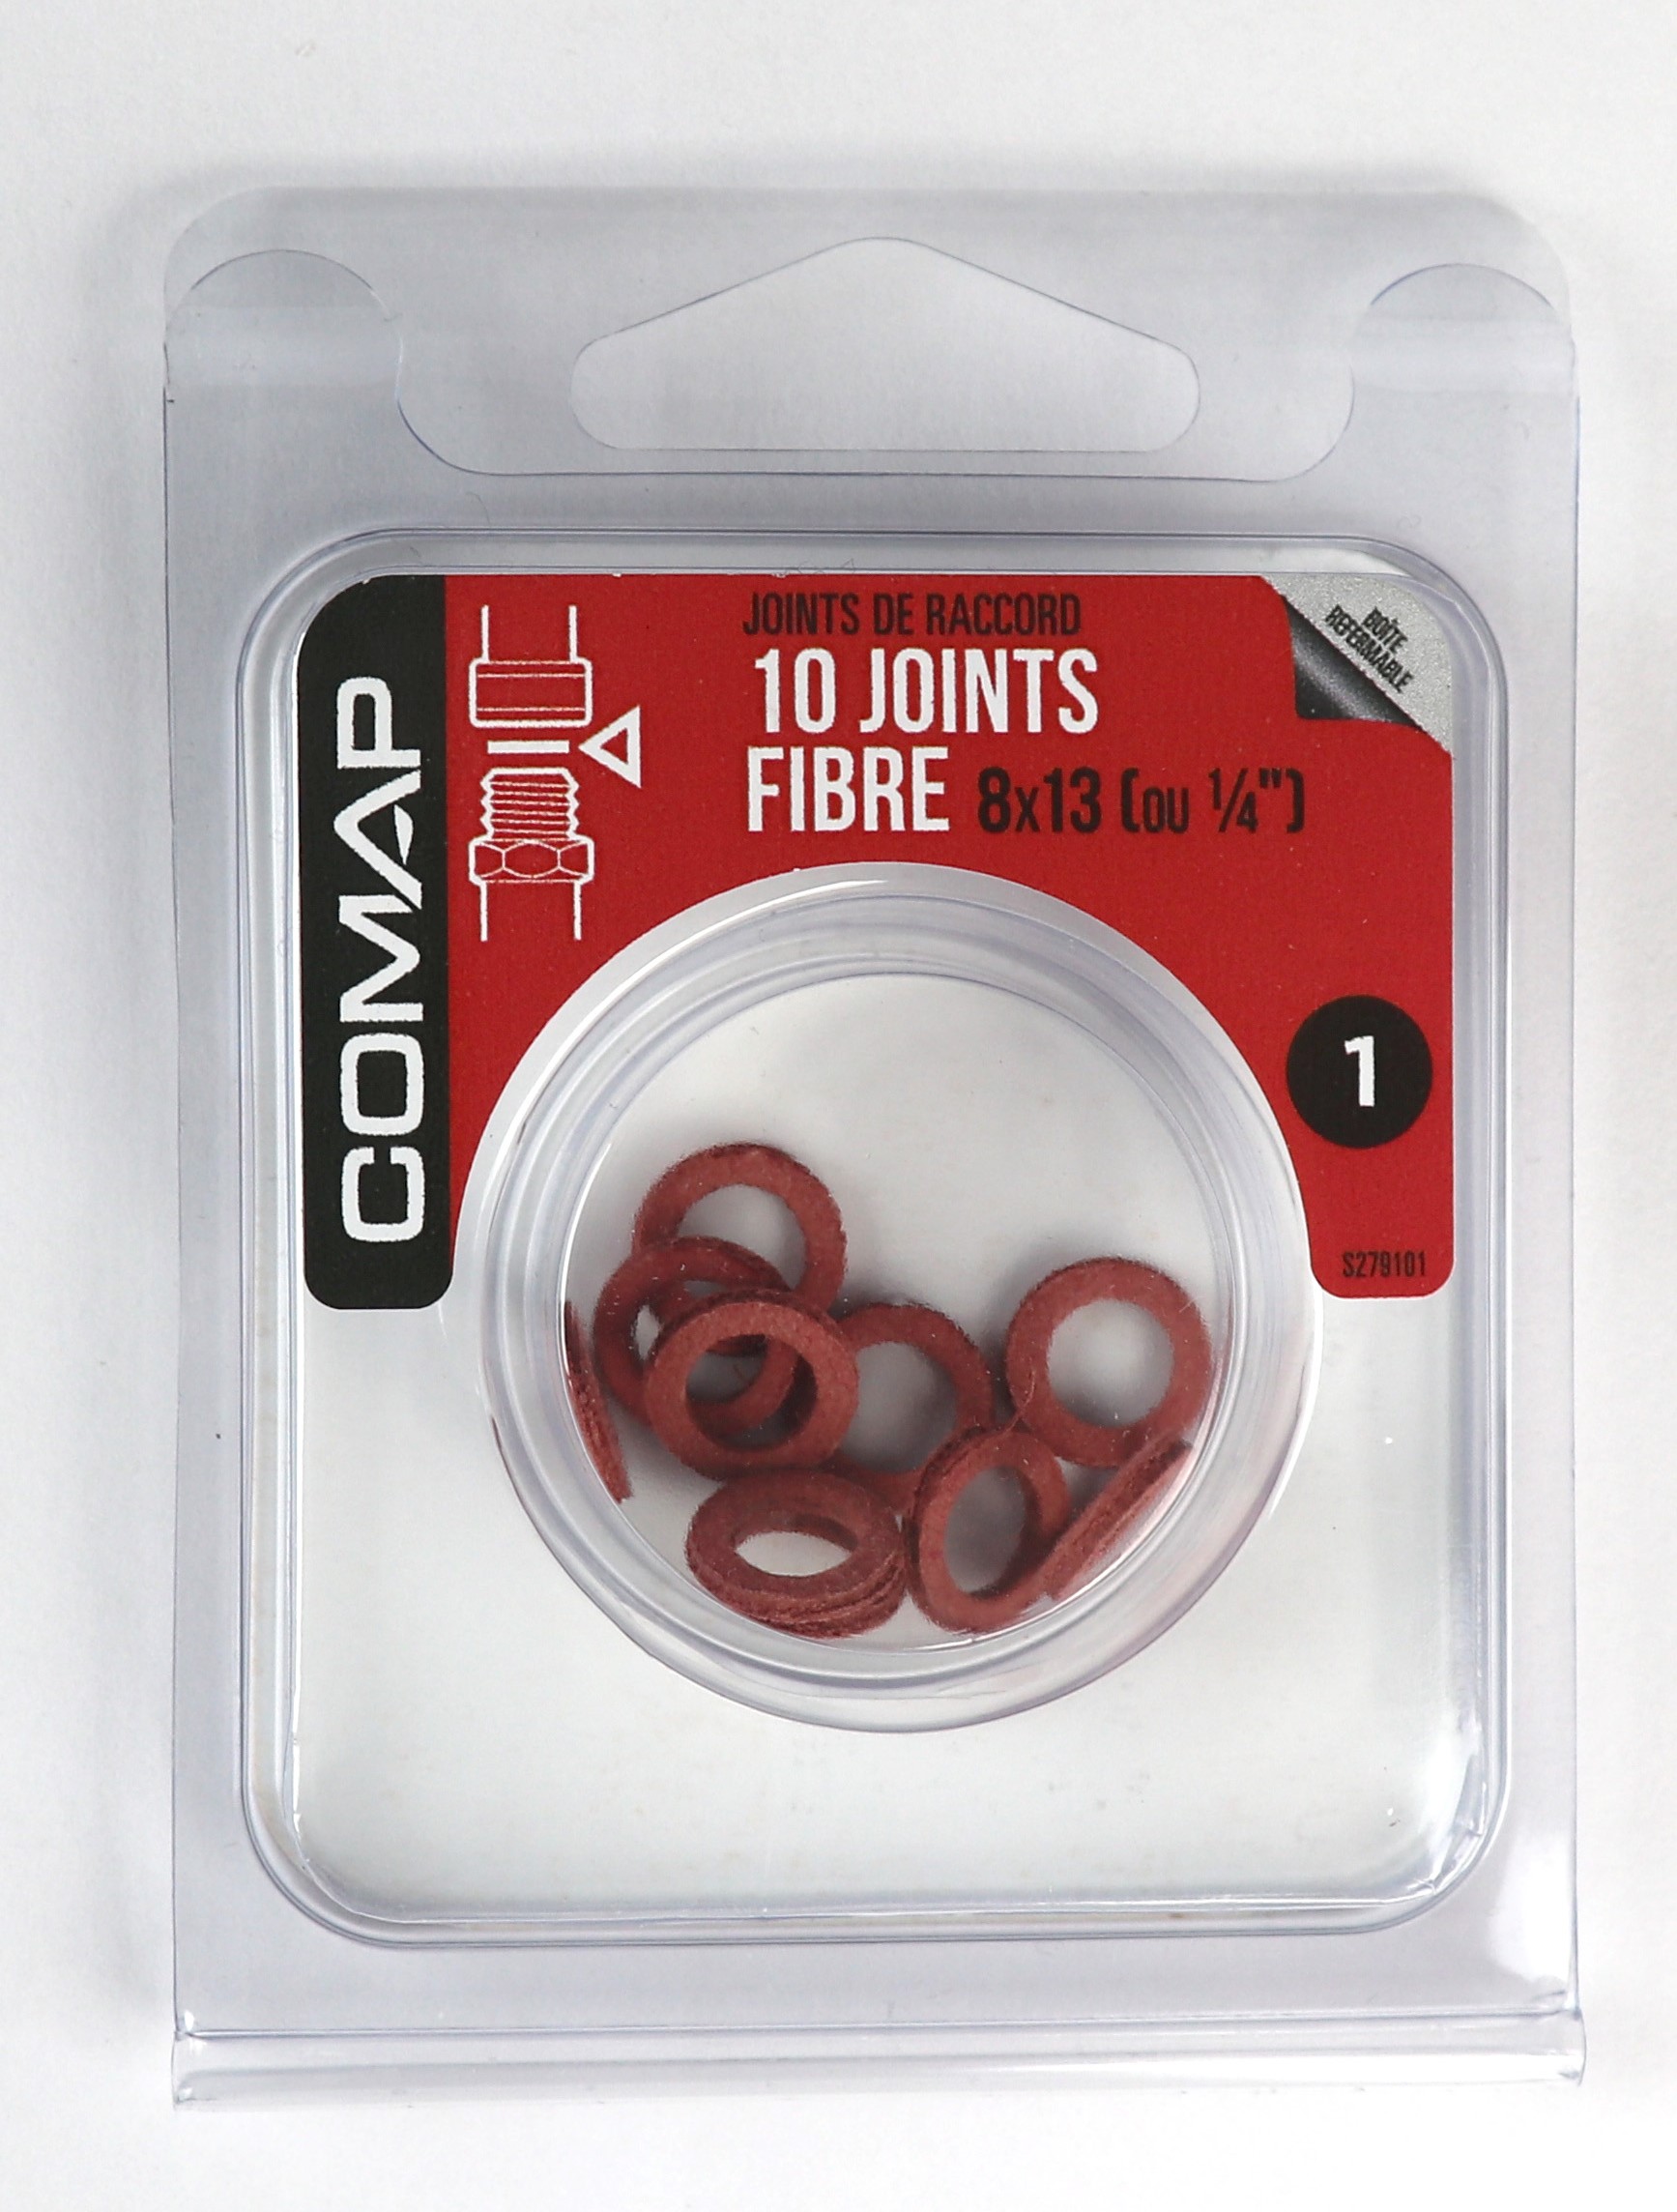 10 Joints fibre 8x13 - COMAP 